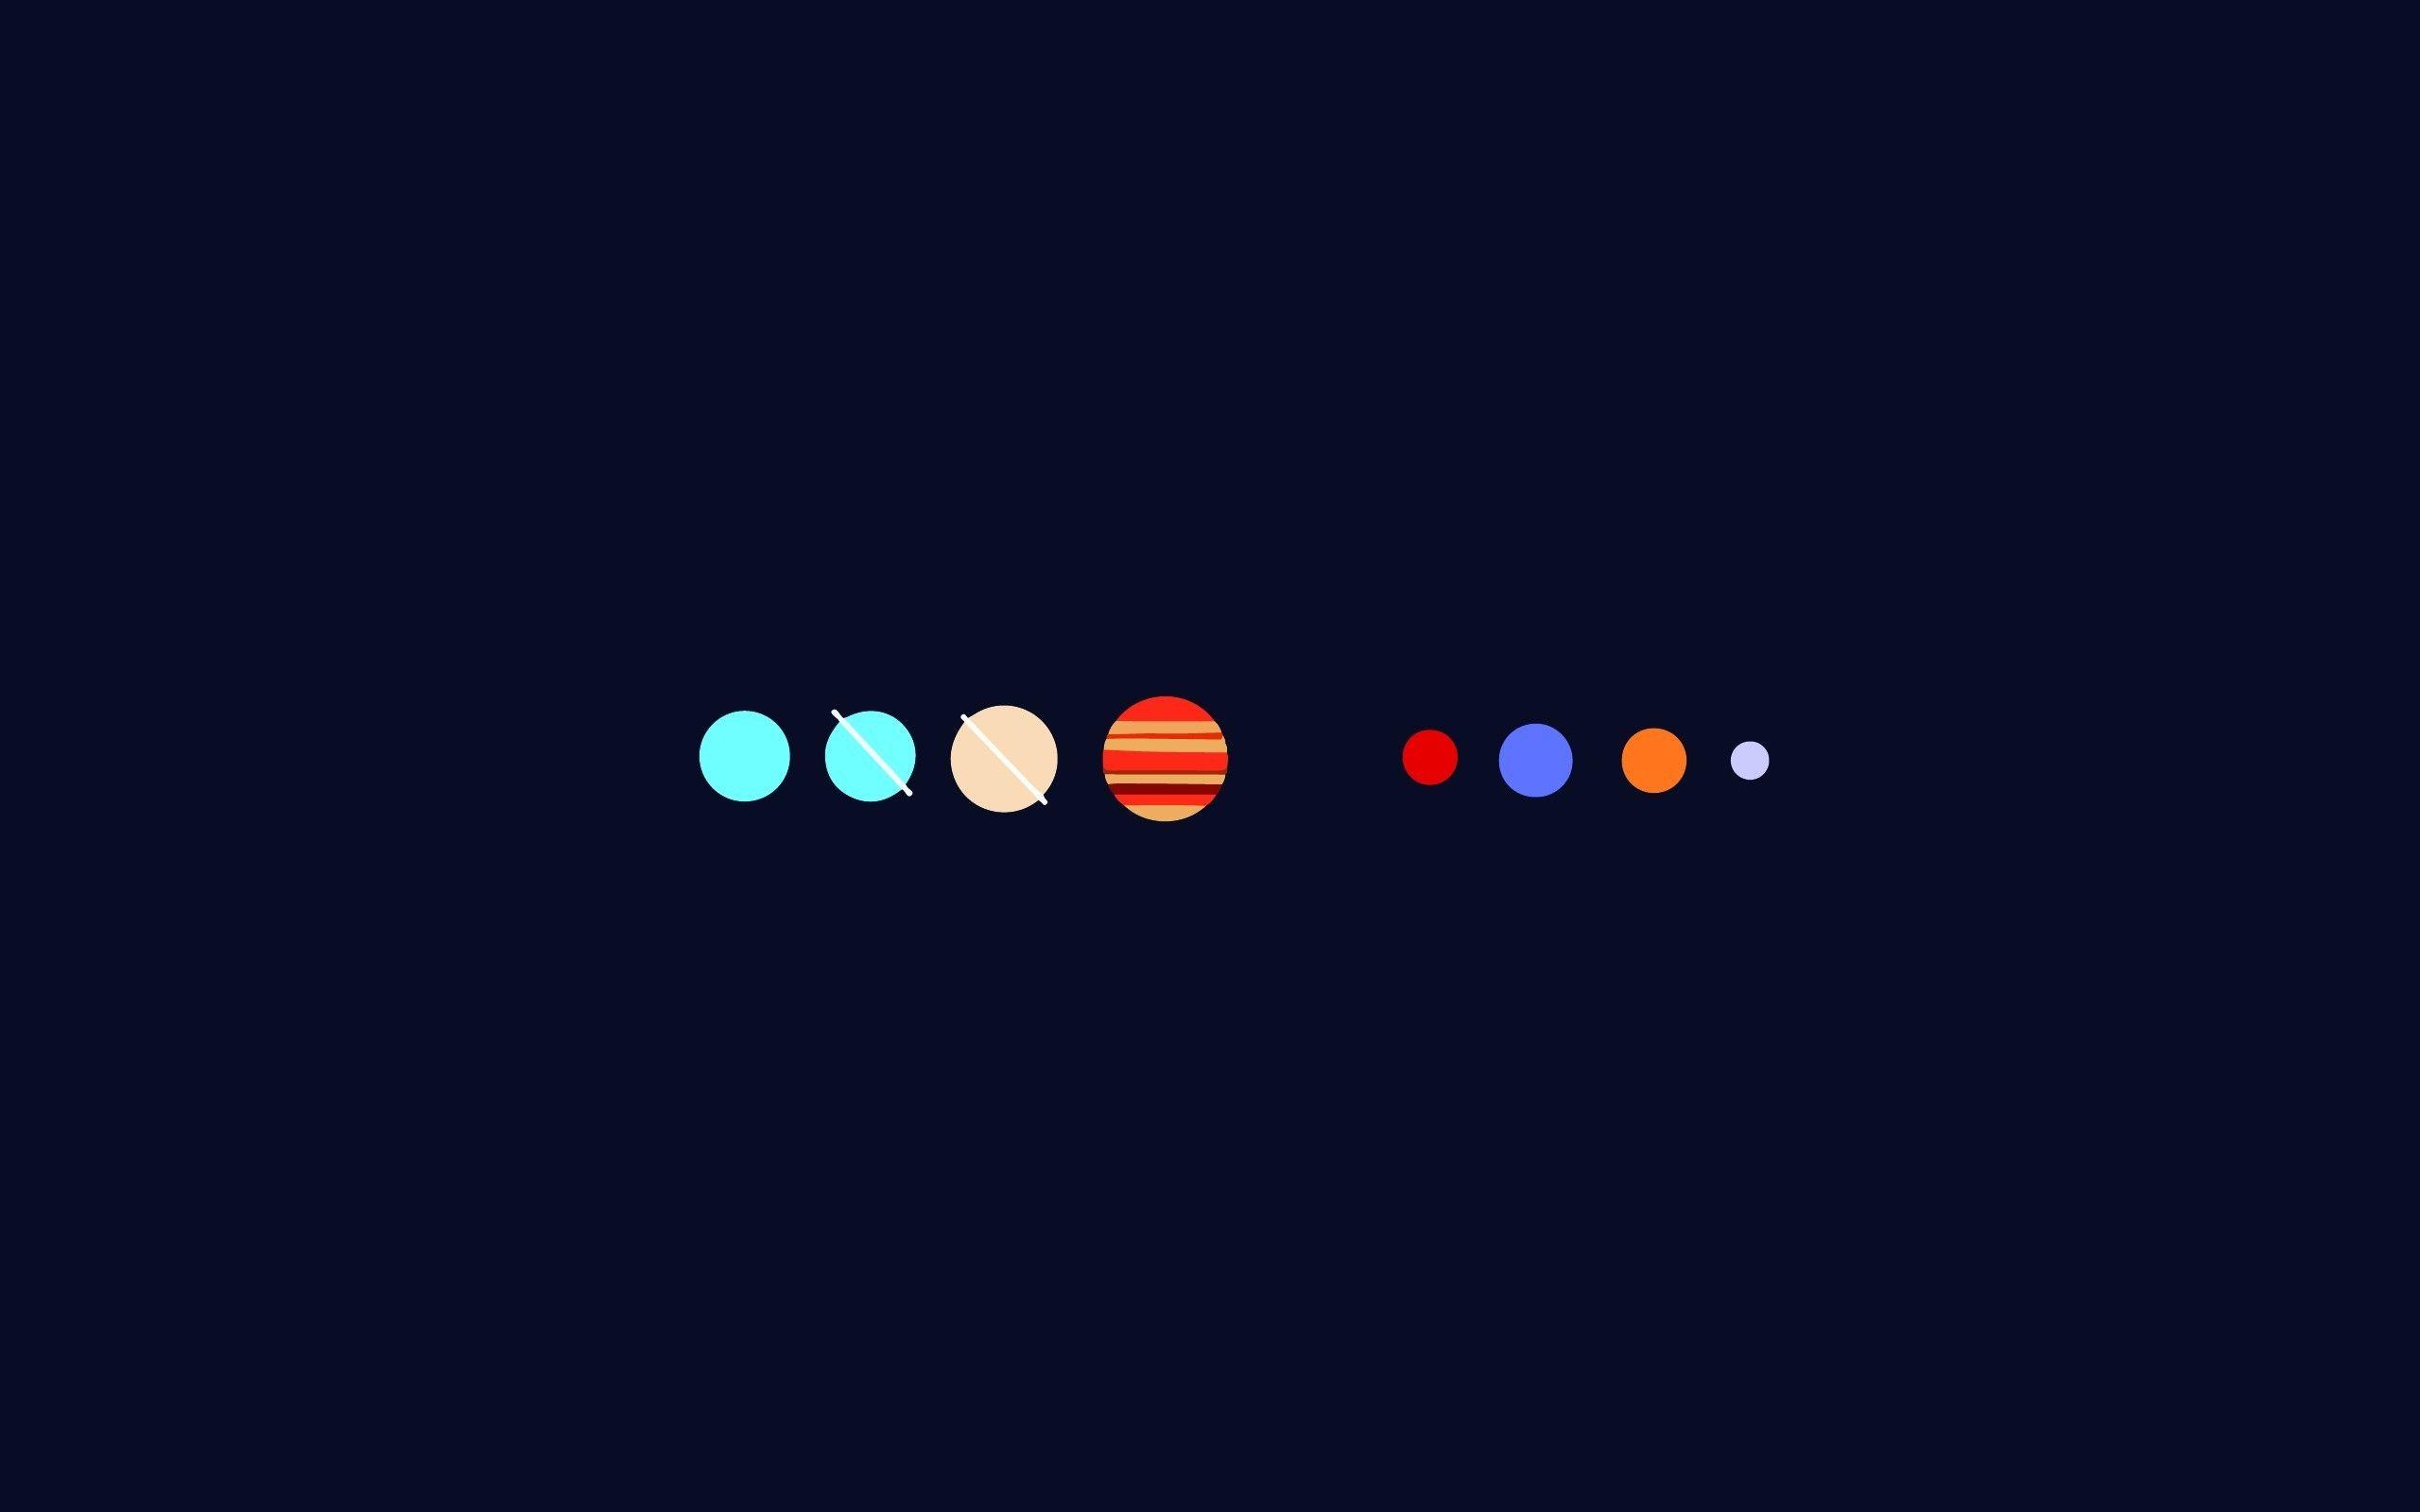 Hình nền Solar System Minimal - Hãy khám phá các hành tinh và ngôi sao trong không gian qua các hình nền Solar System Minimal. Những hình ảnh tối giản sẽ giúp bạn hiểu rõ hơn về vũ trụ, đồng thời hình nền Solar System Minimal cũng làm cho máy tính của bạn trở nên độc đáo hơn bao giờ hết.